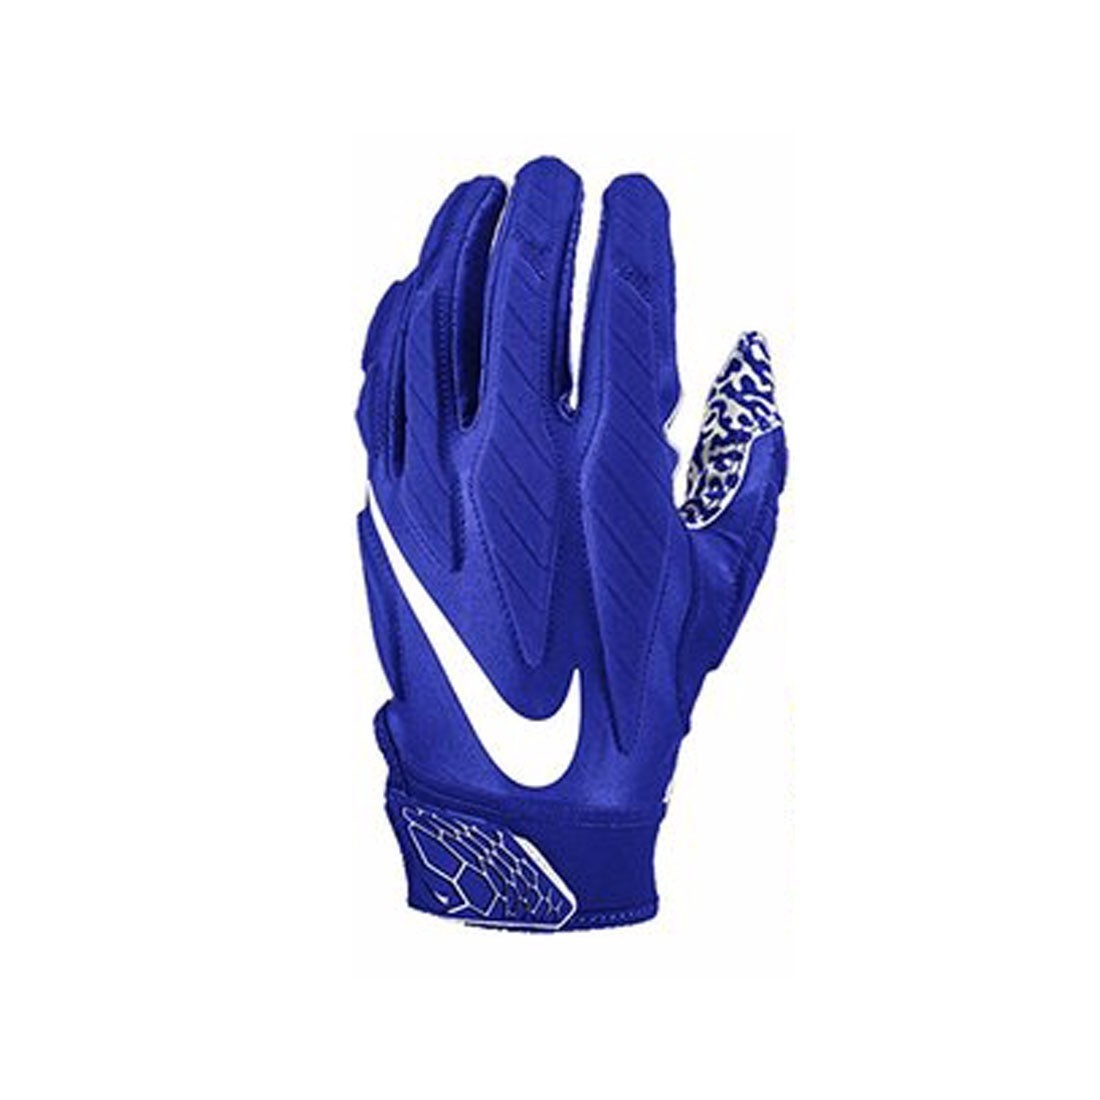 nike men's superbad 5.0 football gloves